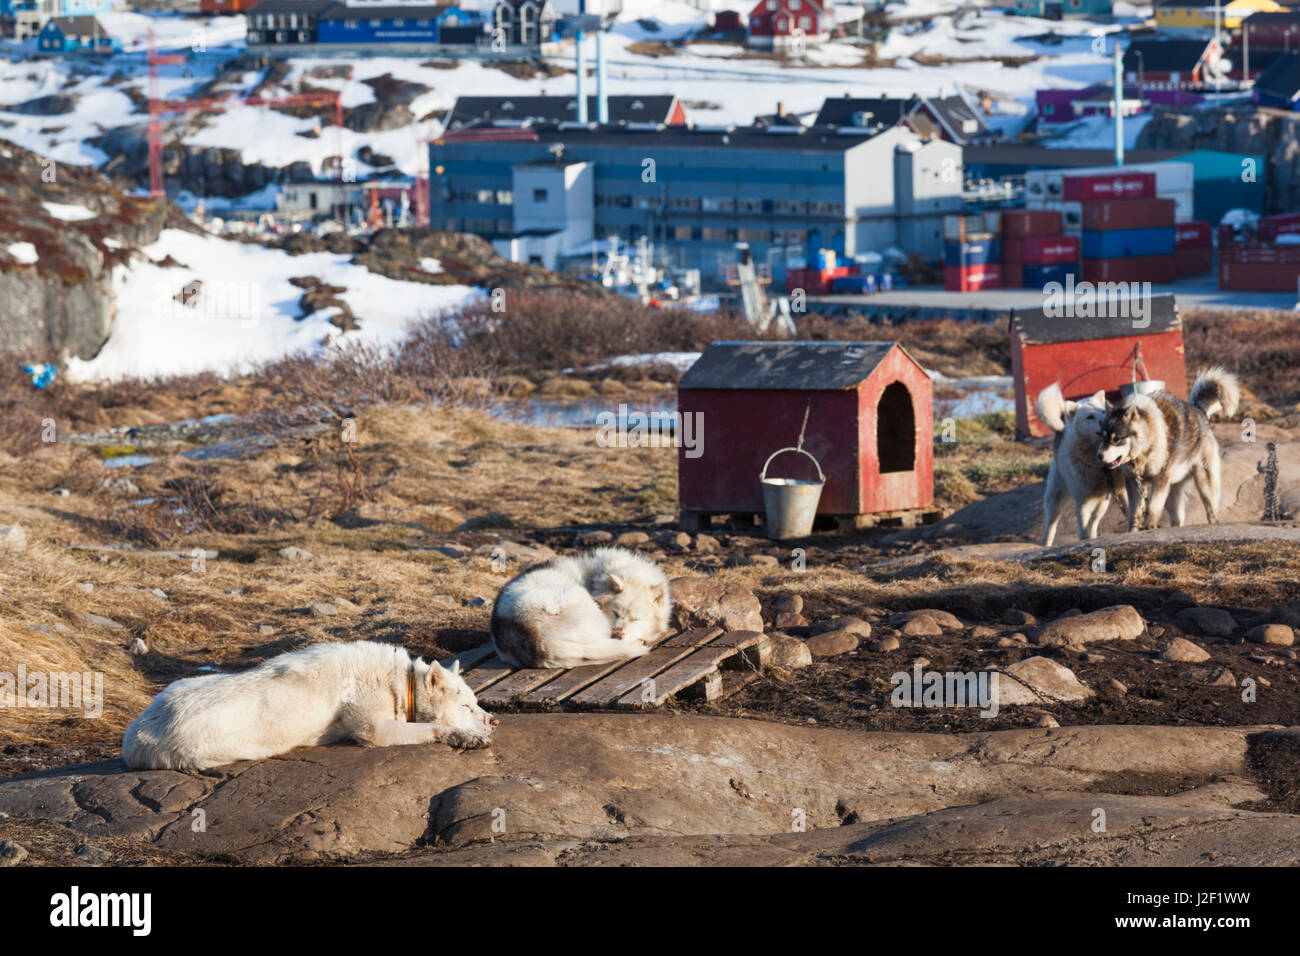 Le Groenland, baie de Disko, Ilulissat, Groenland, les chiens de traîneau Canis lupis familiaris Banque D'Images